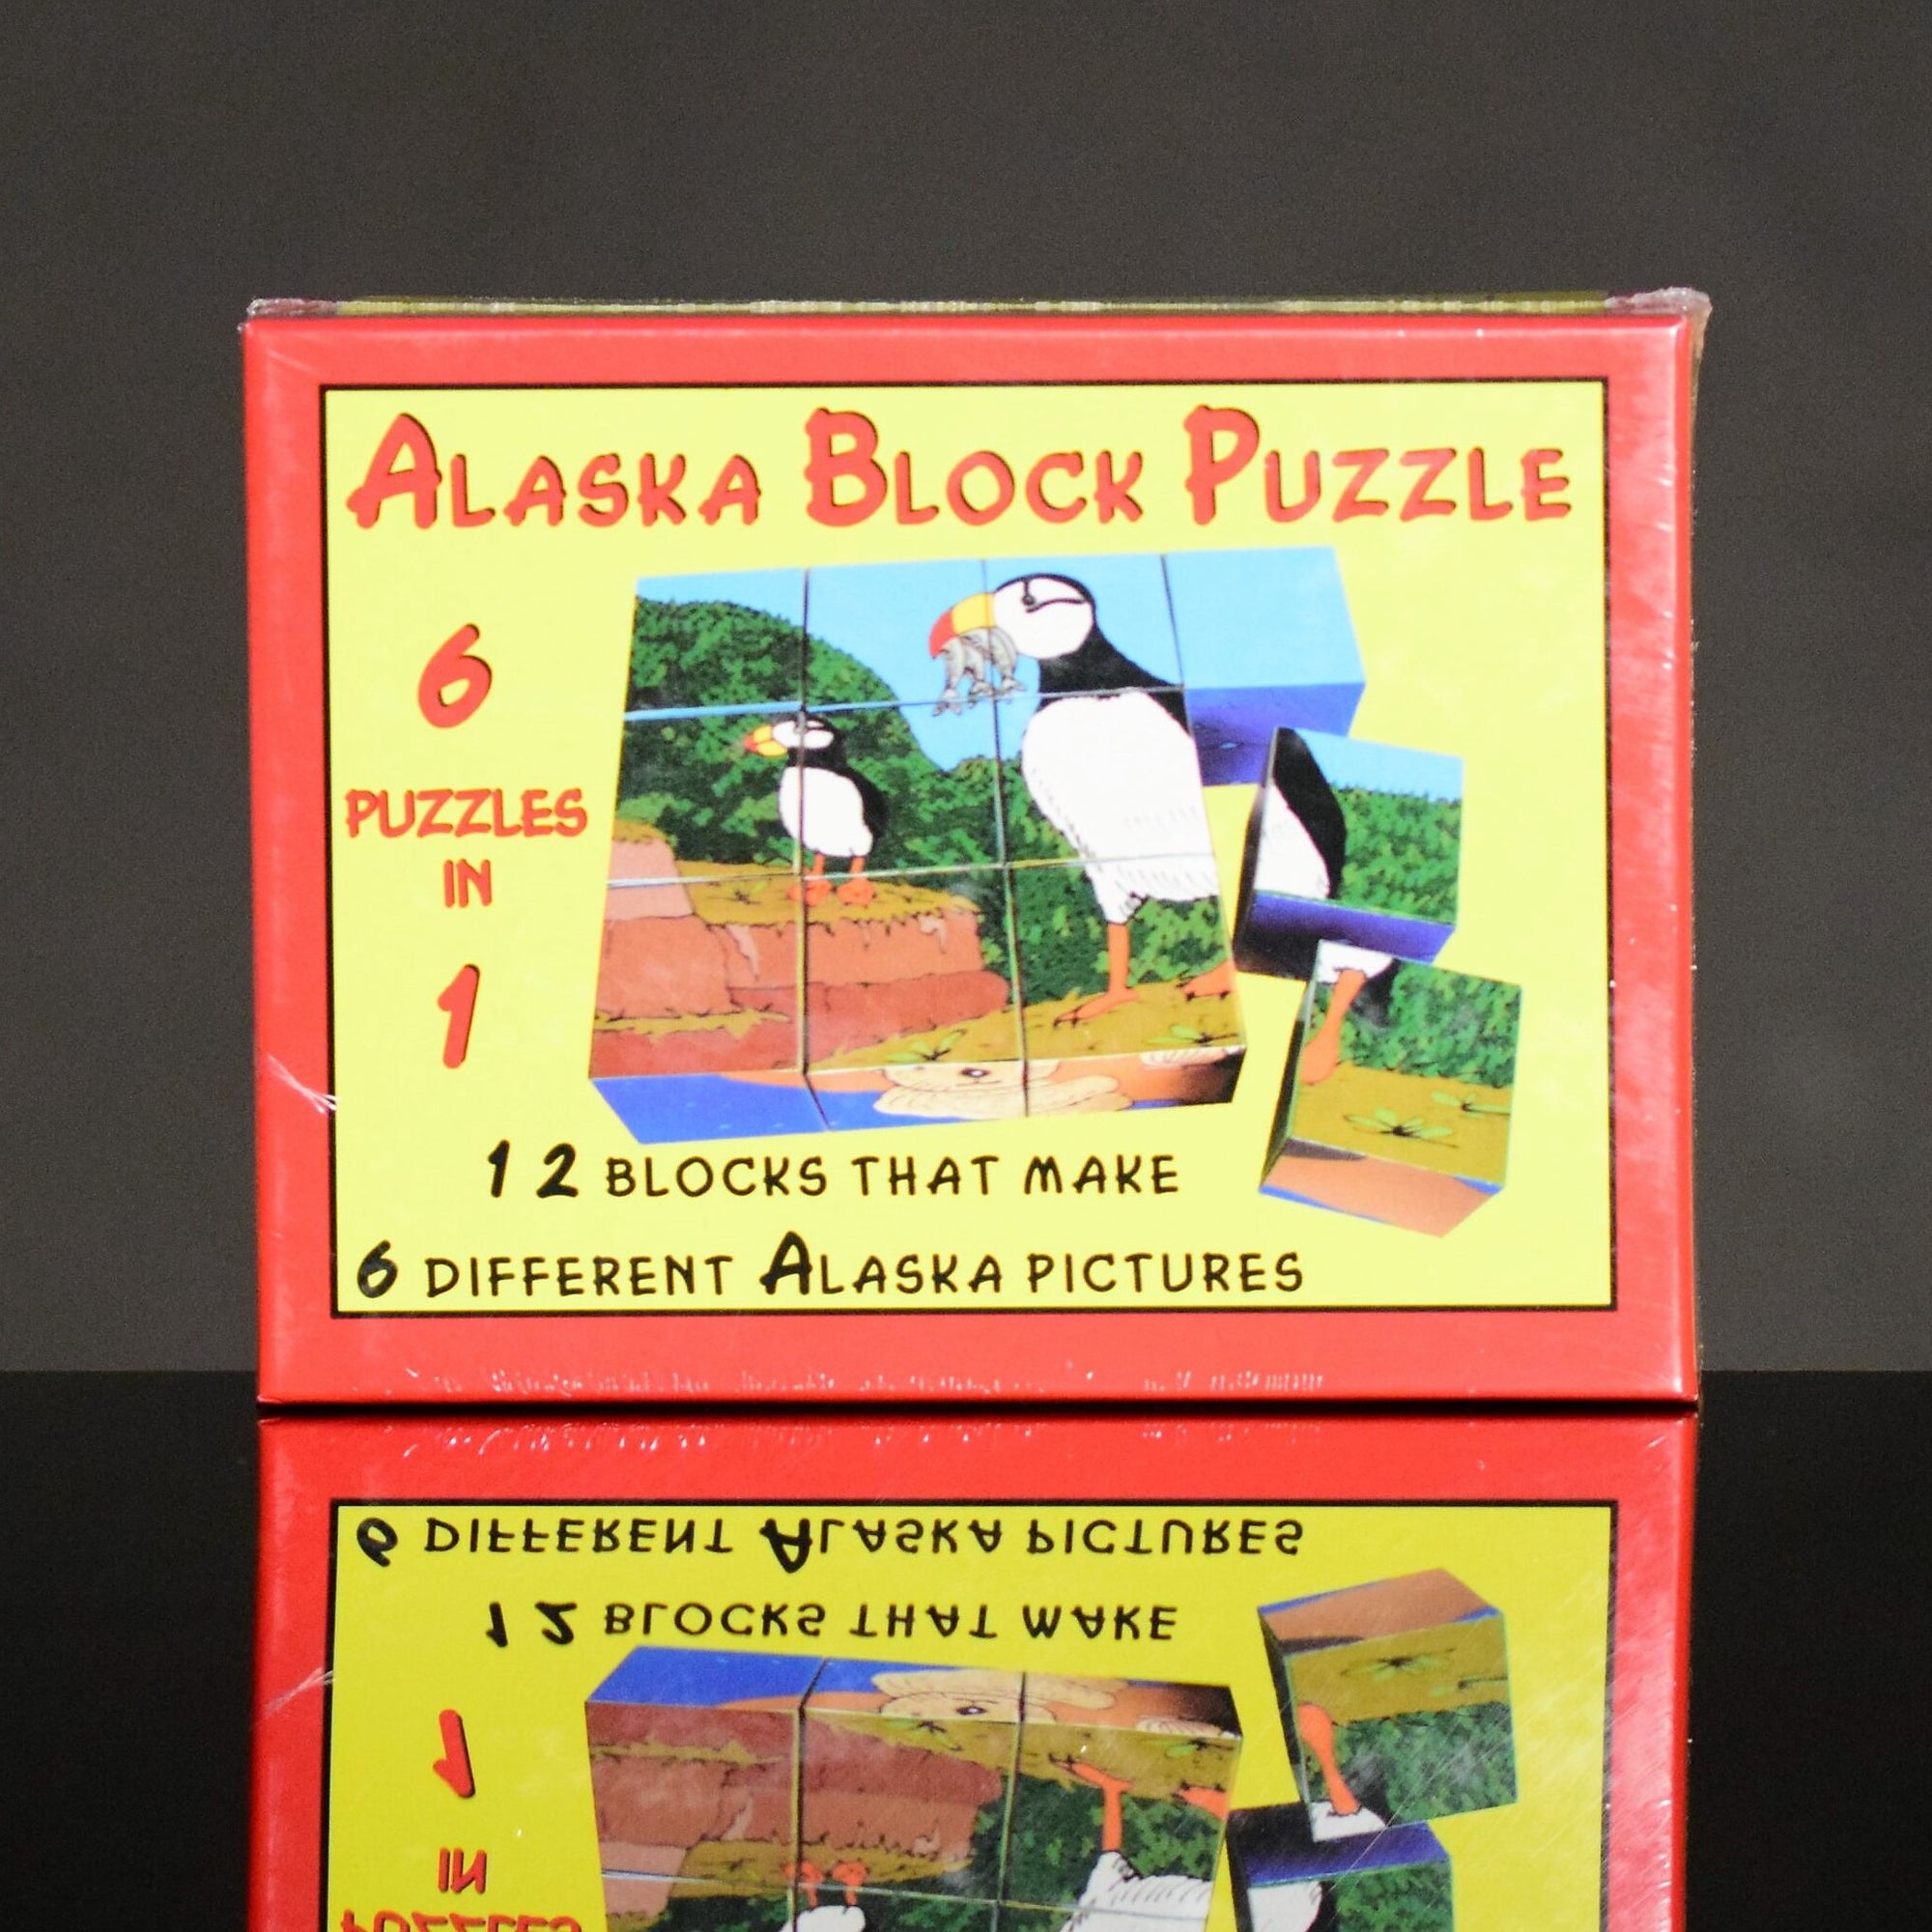 Alaska Block Puzzle